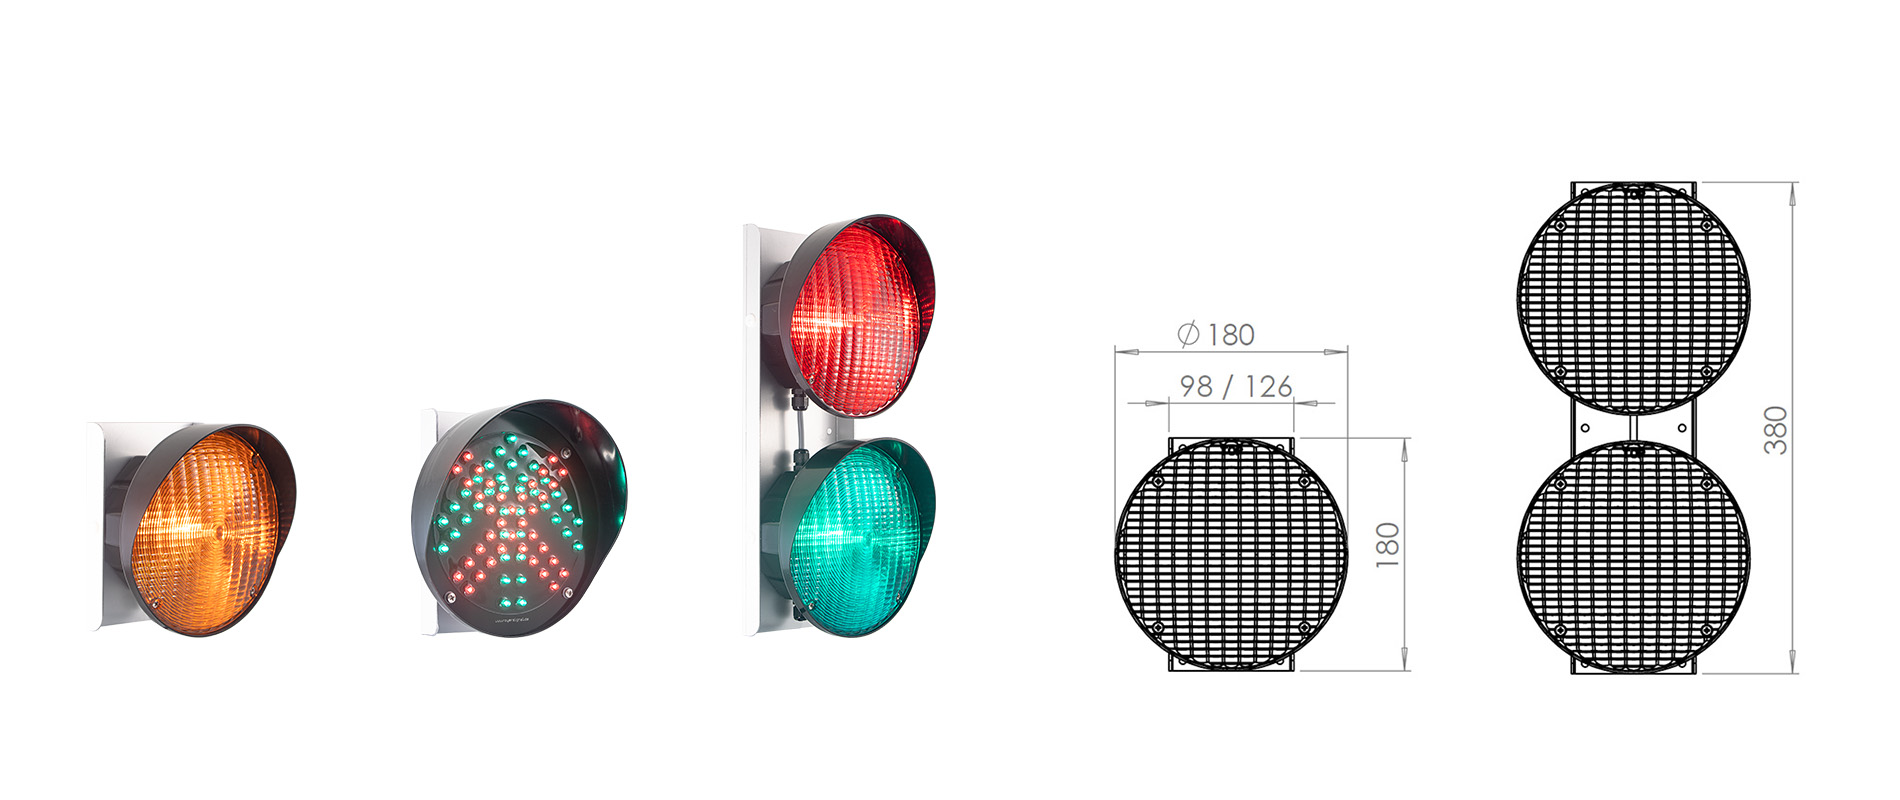 Der Garagen-Lichtsignalgeber GLS180 in verschiedenen Ausführungen mit gelber, roter und grüner Linse. Außerdem ie Kreuz/Pfeil Ampel mit umschaltbaren Symbolen.